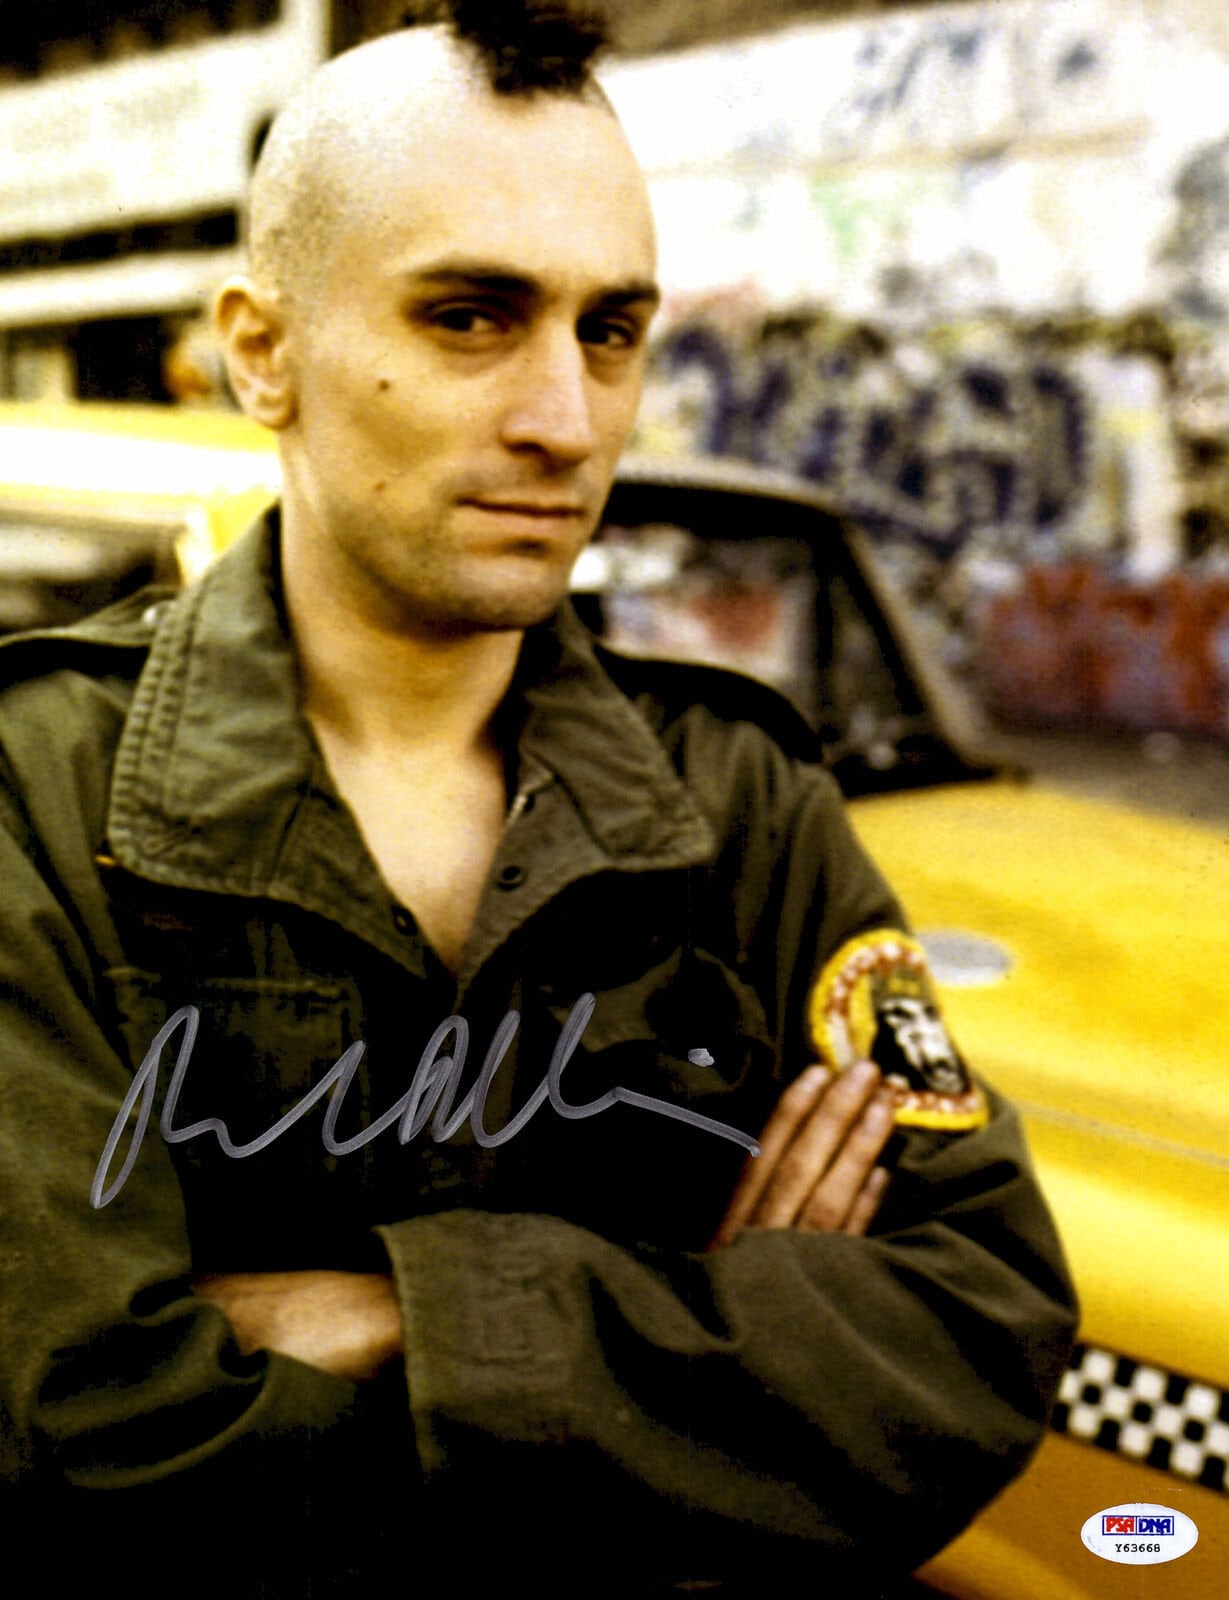 Robert De Niro Taxi Driver 8 X10 20x25 Cm Autographed picture